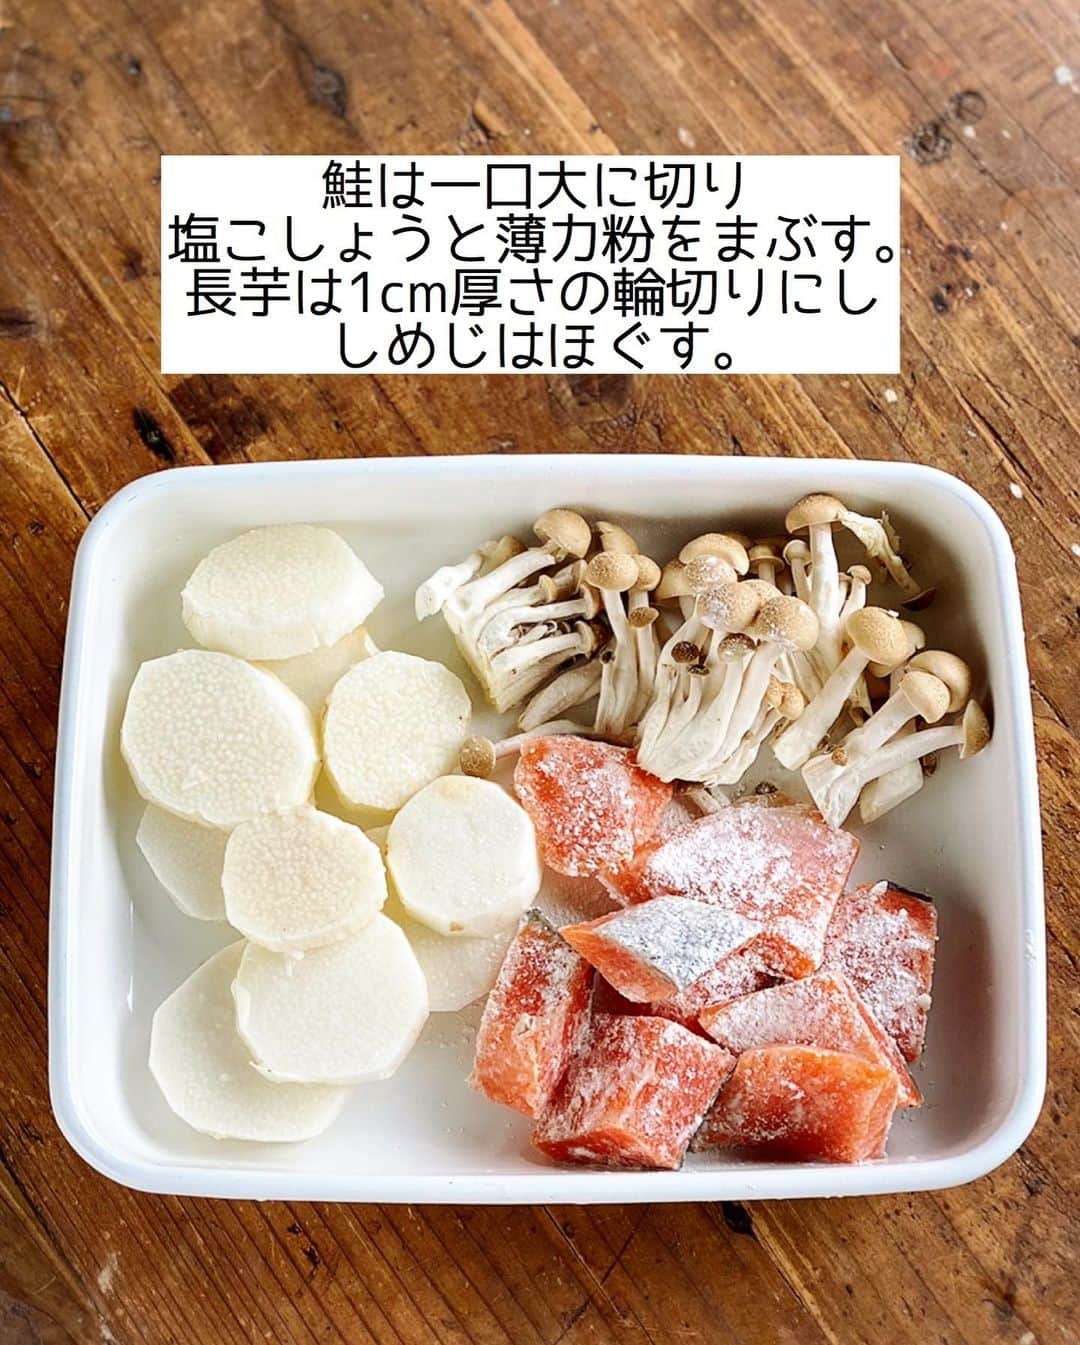 Mizuki【料理ブロガー・簡単レシピ】さんのインスタグラム写真 - (Mizuki【料理ブロガー・簡単レシピ】Instagram)「・﻿ 【#レシピ 】ーーーーーーーーー﻿ ♡鮭と長芋のバター醤油焼き♡﻿ (2品献立提案あり)﻿ ーーーーーーーーーーーーーーー﻿ ﻿ ﻿ ﻿ おはようございます(*^^*)﻿ ﻿ 今日はリクエストの多かった﻿ お魚レシピのご紹介です♩﻿ ﻿ お手軽な鮭の切り身と長芋を﻿ バター醤油で仕上げました♡﻿ どちらも同じくらいに火が通るので﻿ 同時に焼いてたれをからめるだけ！﻿ フライパンひとつで作れる﻿ 簡単時短レシピです(*´艸`)﻿ ﻿ 長芋が入ることで﻿ ボリュームも食べ応えも出ますよ♩﻿ よかったらお試し下さいね(*^^*)﻿ ﻿ ﻿ ﻿ ＿＿＿＿＿＿＿＿＿＿＿＿＿＿＿＿＿＿＿＿﻿ 【2人分】﻿ 生鮭...2切れ﻿ 塩こしょう...少々﻿ 薄力粉...適量﻿ 長芋...10cm(200g)﻿ しめじ...1/2袋﻿ サラダ油...大1﻿ ●醤油・みりん...各大1﻿ ●バター...10g﻿ (あれば)パセリ...適量﻿ ﻿ 1.鮭は一口大に切り、塩こしょうを振って薄力粉をまぶす。長芋は皮を剥いて1cm厚さの輪切りにする。しめじはほぐす。﻿ 2.フライパンにサラダ油を中火で熱し、鮭と長芋を焼く。焼き色がついたら裏返し、裏面も焼いて火を通す。﻿ 3.しめじを加えて炒め合わせ、●を加えて煮からめる。器に盛り、パセリを振る。﻿ ￣￣￣￣￣￣￣￣￣￣￣￣￣￣￣￣￣￣￣￣﻿ ﻿ ﻿ ﻿ 《ポイント》﻿ ♦︎サーモンで作っても美味しいです♩﻿ ♦︎直径26cmのフライパンを使用しています♩﻿ ﻿ ﻿ ﻿ ﻿ ﻿ ﻿ ＿＿＿＿＿＿＿＿＿＿＿＿＿＿＿＿﻿ 🥣🥣🥣 2品献立提案 🥣🥣🥣﻿ ￣￣￣￣￣￣￣￣￣￣￣￣￣￣￣￣﻿ 【合間に作れるおすすめ副菜】﻿ >豚ニラもやしスープ(P.31)﻿ >キムチスープ春雨(P.25)﻿ (#Mizukiの2品献立 より)﻿ ﻿ 【献立の段取り】﻿ どちらもレンジで作れるスープ♩﻿ スープをレンジにかけてから﻿ メインを焼いて下さい🥢﻿ ￣￣￣￣￣￣￣￣￣￣￣￣￣￣￣￣￣﻿ ﻿ ﻿ ﻿ ﻿ ﻿ ﻿ ⭐️発売中⭐️3刷重版が決まりました😭﻿ 本当にありがとうございます(涙)﻿ _____________________________________﻿ \15分でいただきます/﻿ 📕#Mizukiの2品献立 📕﻿ (9月24日発売・マガジンハウス)﻿ ￣￣￣￣￣￣￣￣￣￣￣￣￣￣￣￣￣﻿ ﻿ 忙しい私たちには﻿ 2品くらいがちょうどいい！﻿ 『しんどくない献立、考えました』﻿ ￣￣￣￣￣￣￣￣￣￣￣￣￣￣￣￣﻿ ﻿ ーーーーーPART.1 ーーーーー﻿ 【Mizukiのお墨つき！２品献立ベスト10】﻿ 約15分でできる10献立をご紹介！﻿ メインは全部フライパン、副菜はレンチンor混ぜるだけ♡﻿ ﻿ ーーーーーPART.2 ーーーーー﻿ 【フライパンひとつ！今夜のメインおかず】﻿ 献立の主役になる肉や魚のおかず50品！﻿ Part3の副菜と組み合わせれば﻿ 献立のバリエーションが広がりますよ♩﻿ ﻿ ーーーーー PART.3 ーーーーー﻿ 【合間に作れる！ 野菜別かんたん副菜】﻿ レンチンor和えるだけの副菜レシピを﻿ 素材別にたっぷり収録♩﻿ ﻿ ーーーーー番外編ーーーーー﻿ 【ひとつで満足！ご飯＆麺】﻿ 【具だくさん！おかずスープ】﻿ 【オーブンいらずのおやつレシピ】﻿ ￣￣￣￣￣￣￣￣￣￣￣￣￣￣￣￣￣￣﻿ (ハイライトにリンク🔗あります💗)﻿ ﻿ ﻿ ﻿ ﻿ ＿＿＿＿＿＿＿＿＿＿＿＿＿＿＿＿＿＿﻿ レシピを作って下さった際や﻿ レシピ本についてのご投稿には﻿ タグ付け( @mizuki_31cafe )して﻿ お知らせいただけると嬉しいです😊💕﻿ ￣￣￣￣￣￣￣￣￣￣￣￣￣￣￣￣￣￣﻿ ﻿ ﻿ ﻿ ﻿ #鮭#長芋#バター醤油#魚#フライパン#Mizuki#簡単レシピ#時短レシピ#節約レシピ#料理#フーディーテーブル#マカロニメイト#おうちごはん#デリスタグラマー#料理好きな人と繋がりたい#食べ物#料理記録#おうちごはんlover#写真好きな人と繋がりたい#foodpic#cooking#recipe#lin_stagrammer#foodporn#yummy#f52grams#鮭と長芋のバター醤油焼きm」11月13日 7時01分 - mizuki_31cafe